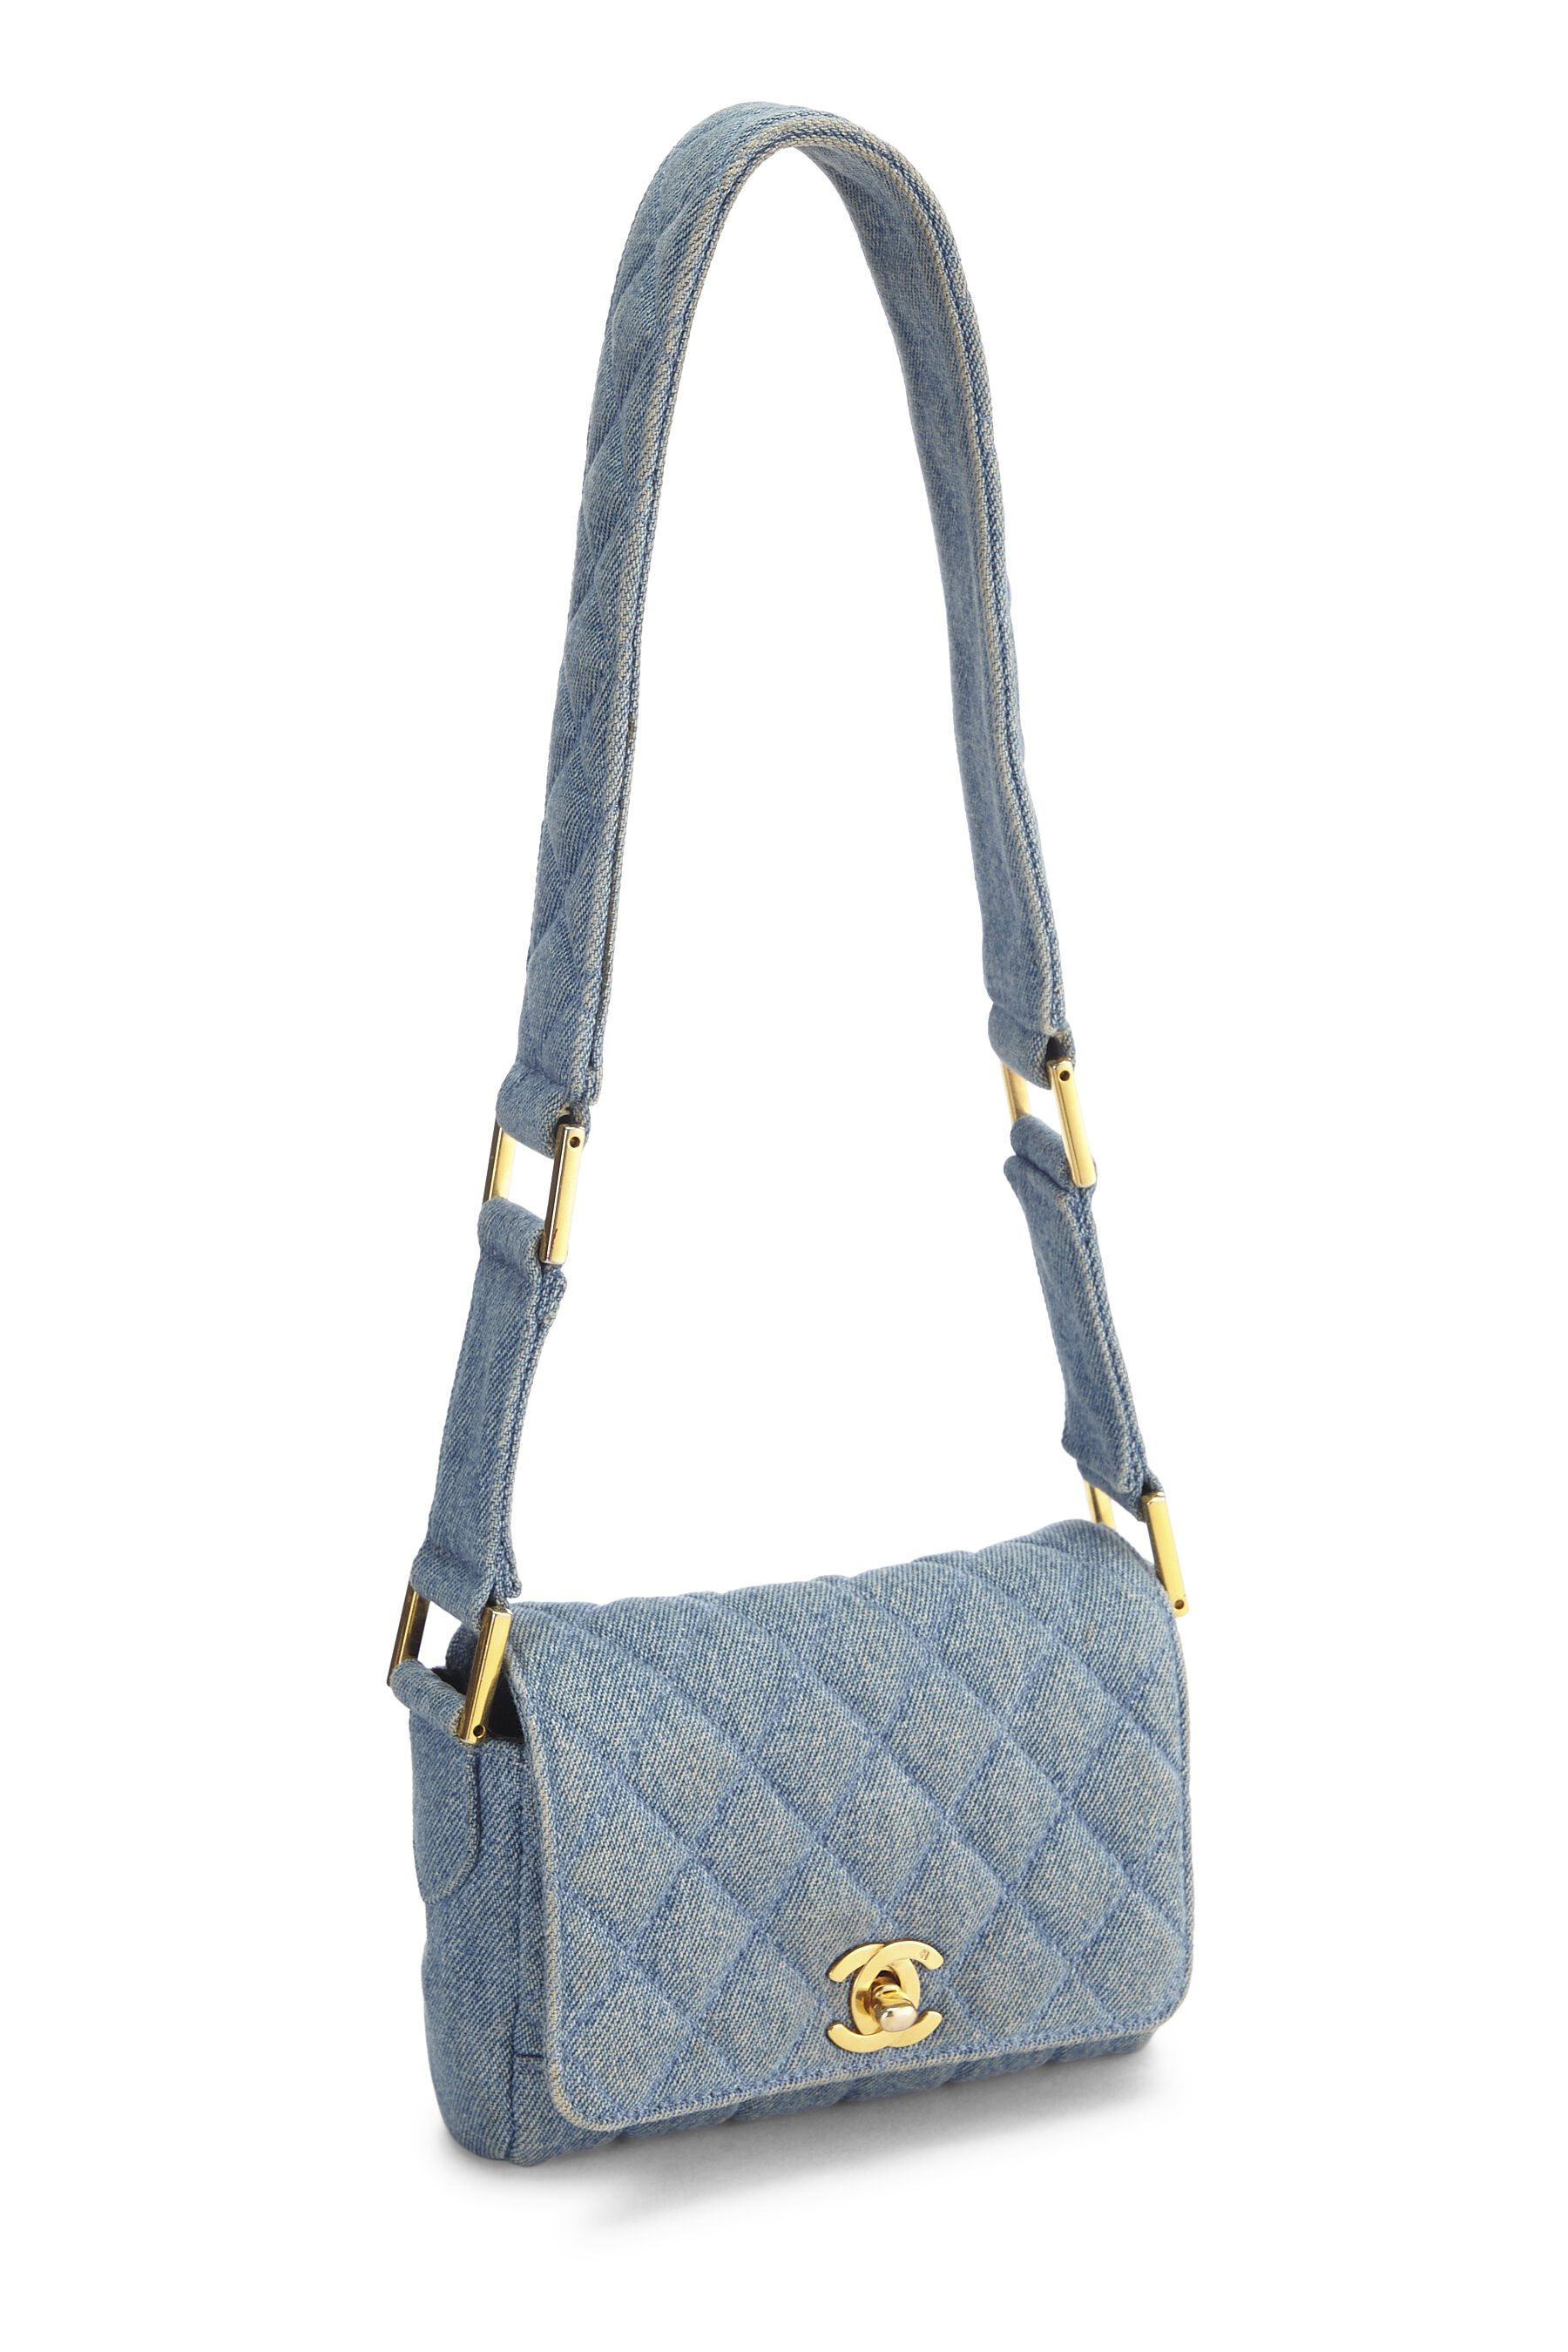 Chanel - Blue Denim Shoulder Bag Mini